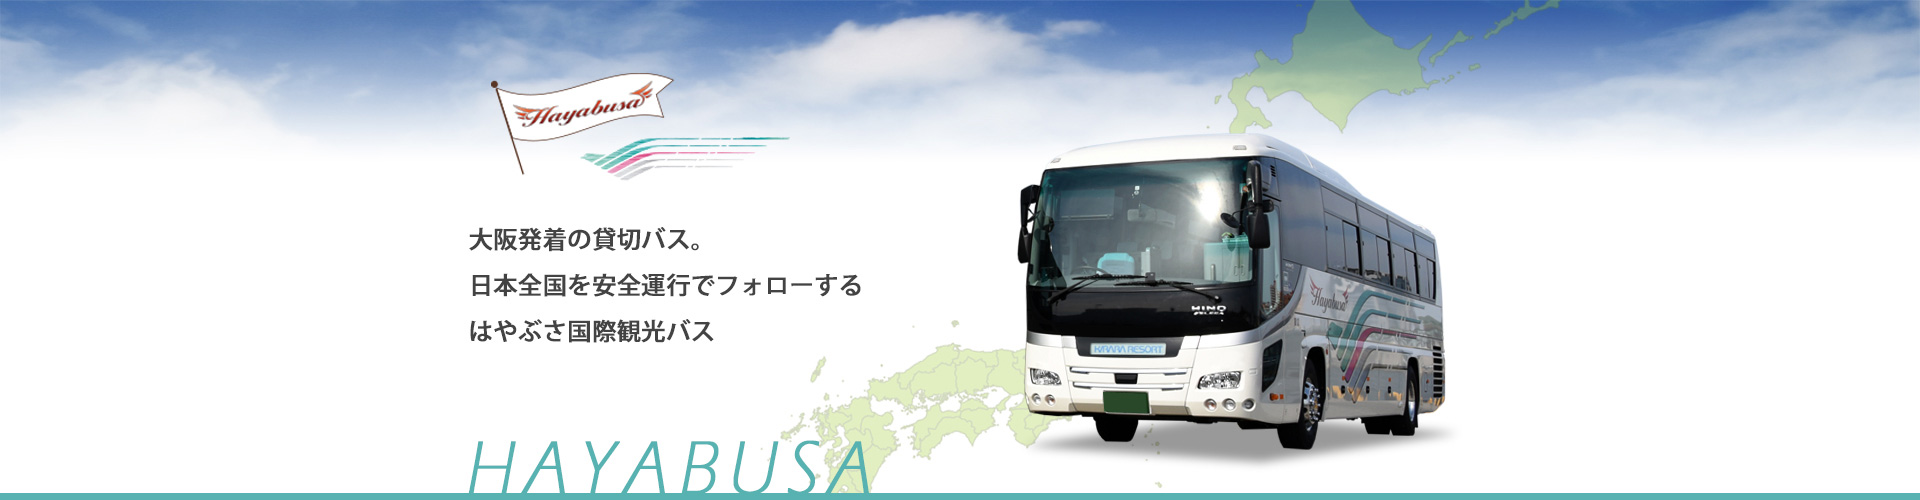 大阪発着の貸切バス。日本全国を安全運行でフォローするはやぶさ国際観光バス